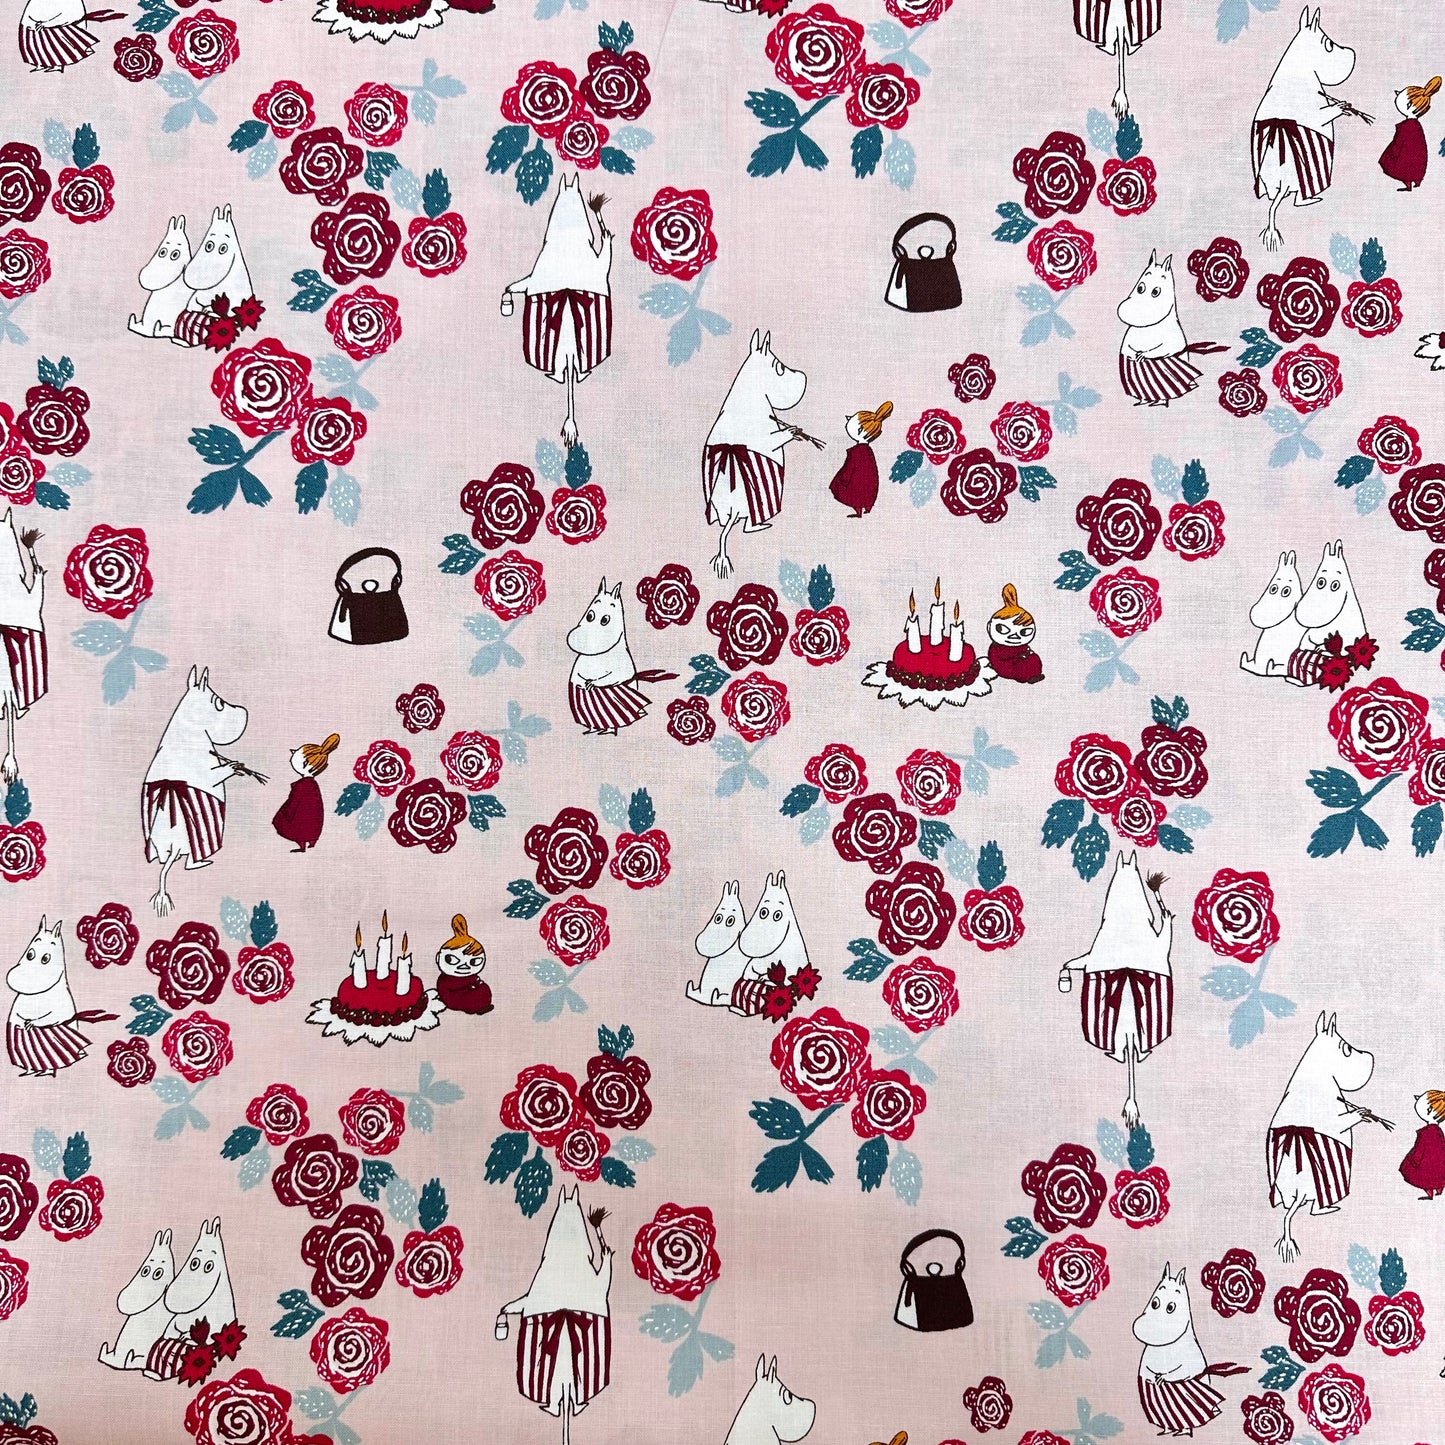 Japan | Rose Moomins 玫瑰姆明 | cotton printed sheeting 純棉